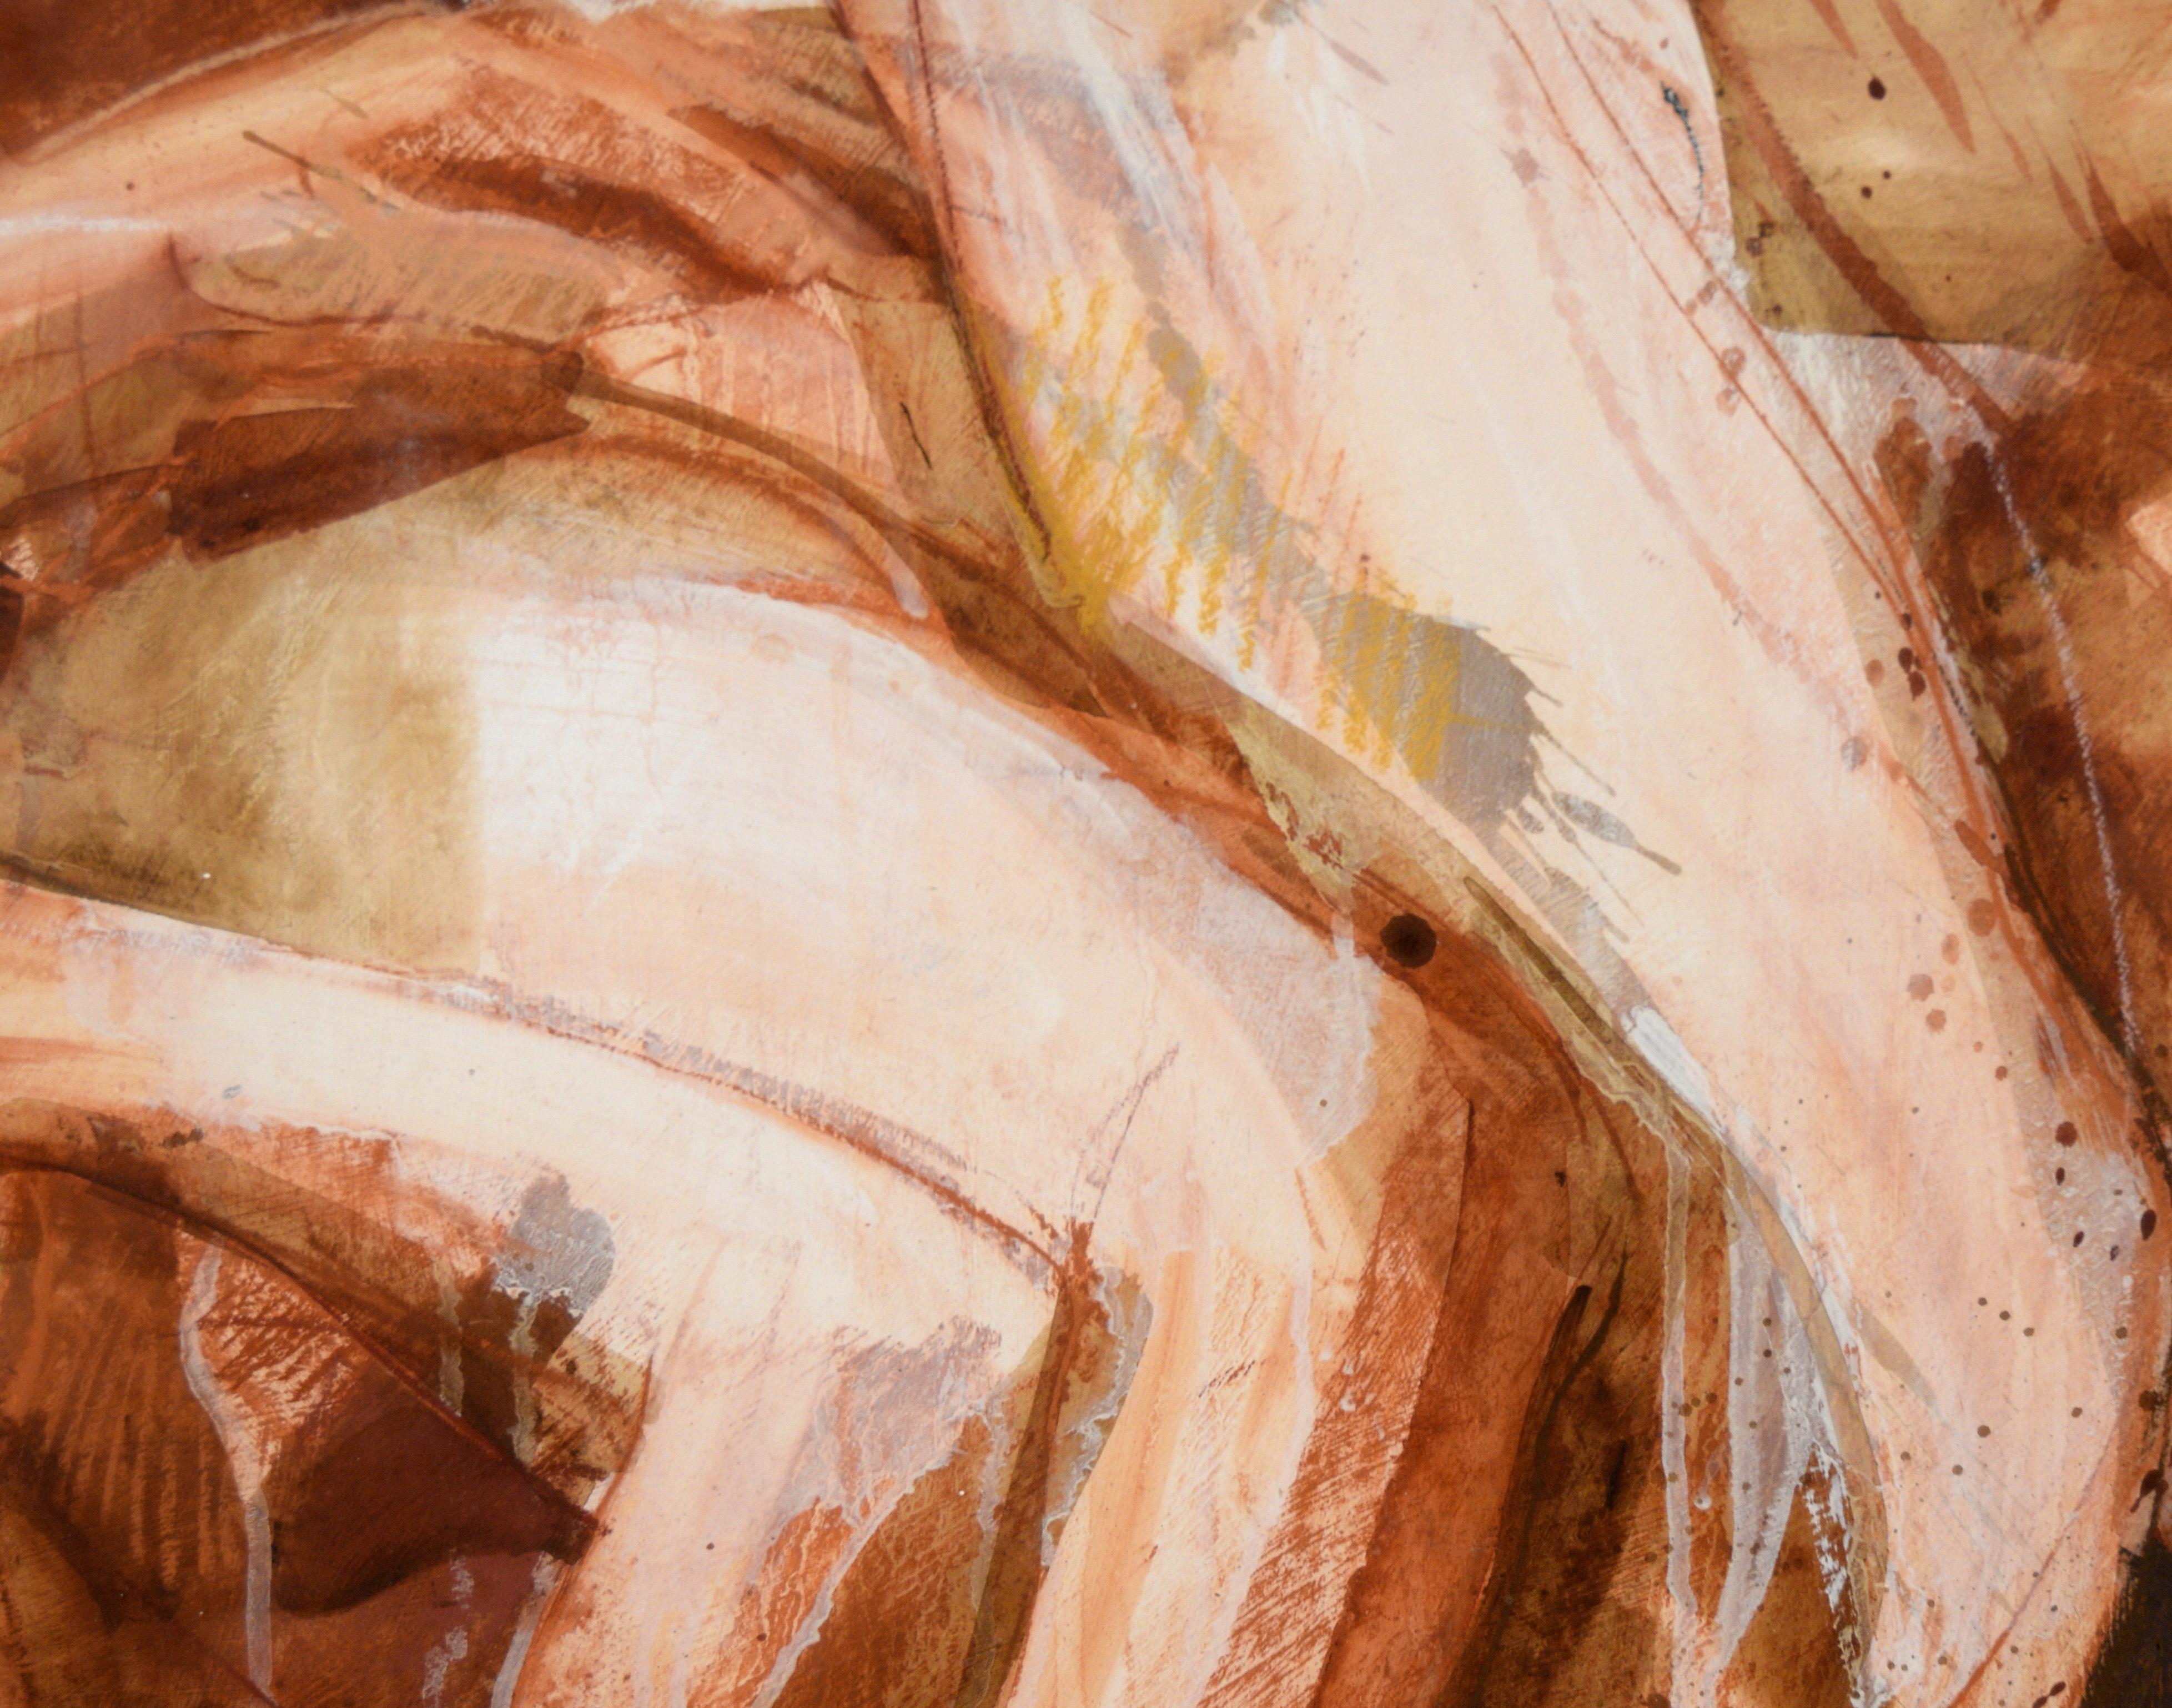 Lovers – Nacktes Paar im Bett – Figurative Komposition aus Acryl auf Papier

Ausdrucksstarke Darstellung eines nackten Paares von Byron Richard Rodarmel (Amerikaner, 1932-2007). Ein Paar liegt ineinander verschlungen auf einem Bett, das in